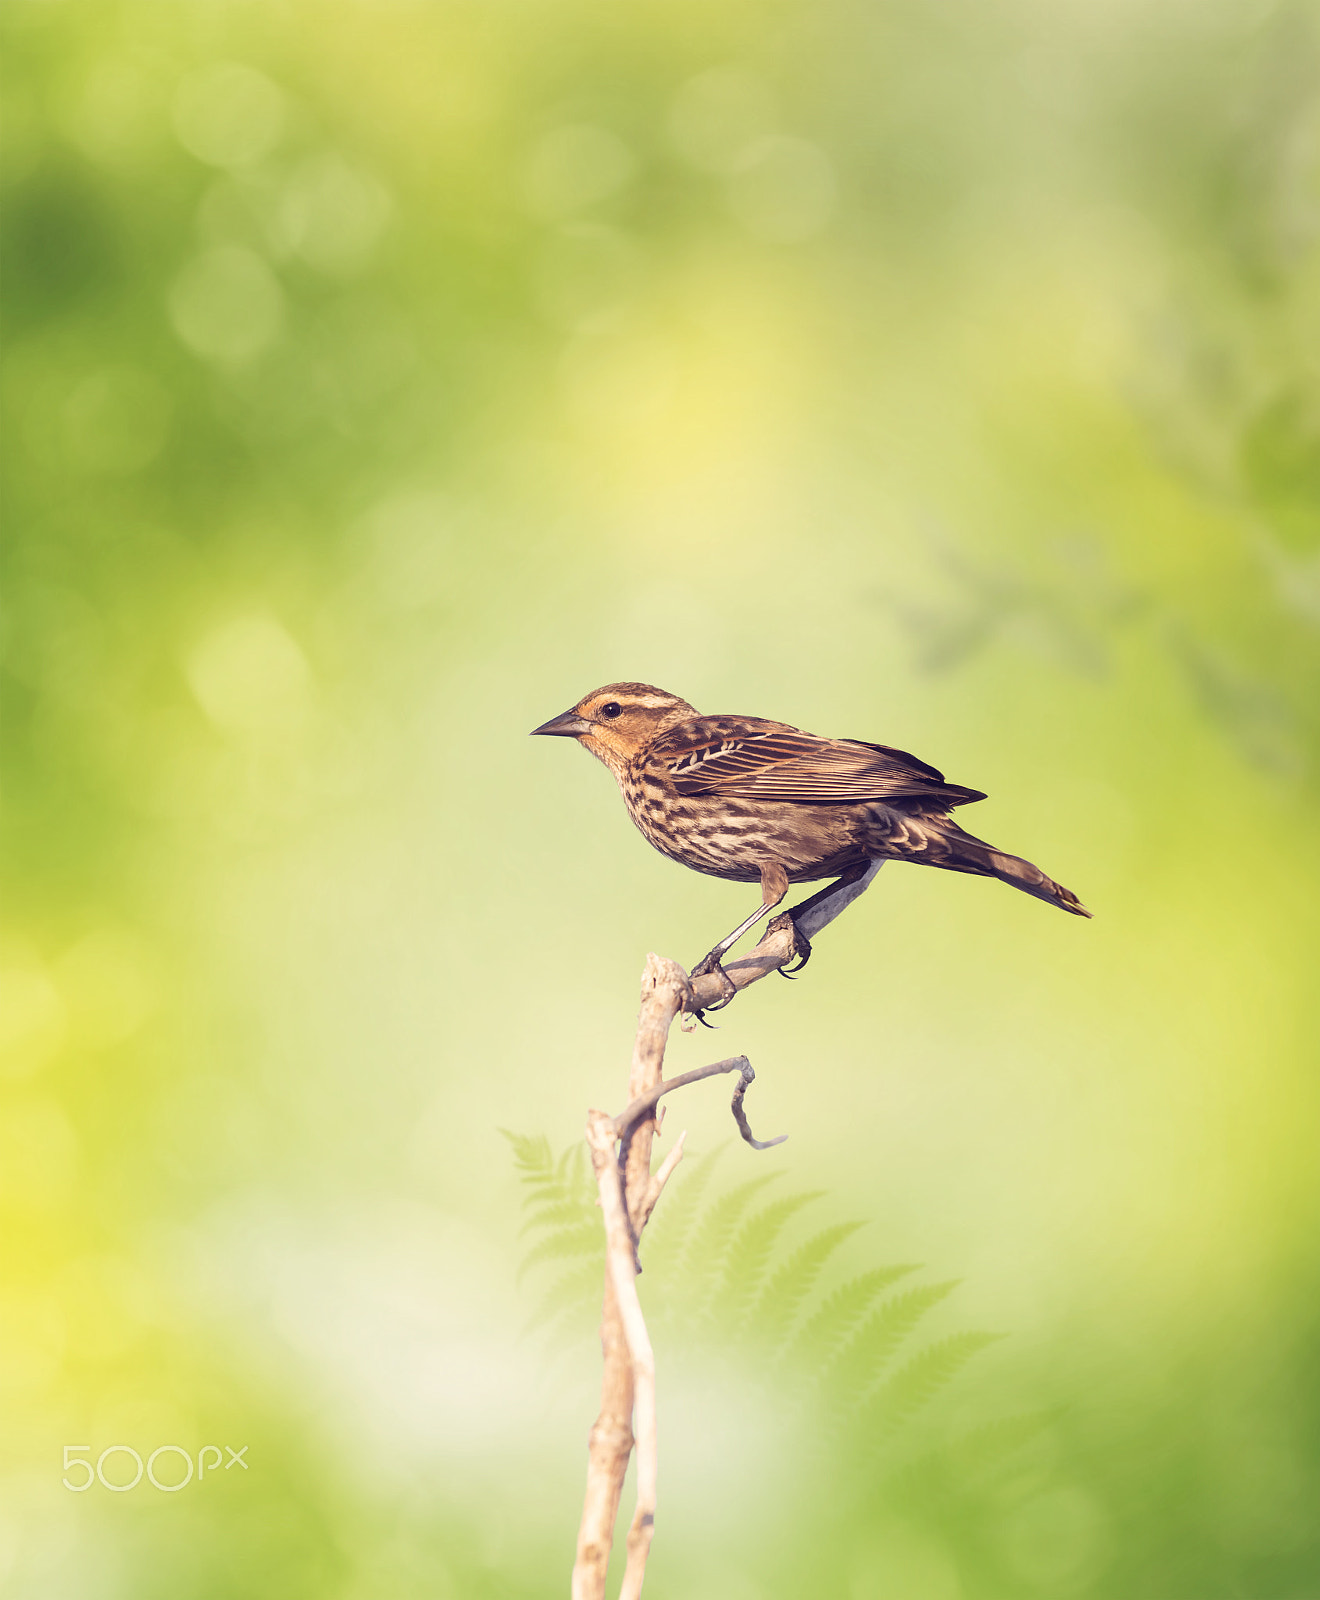 Nikon D800 sample photo. Brown bird perches on a branch photography